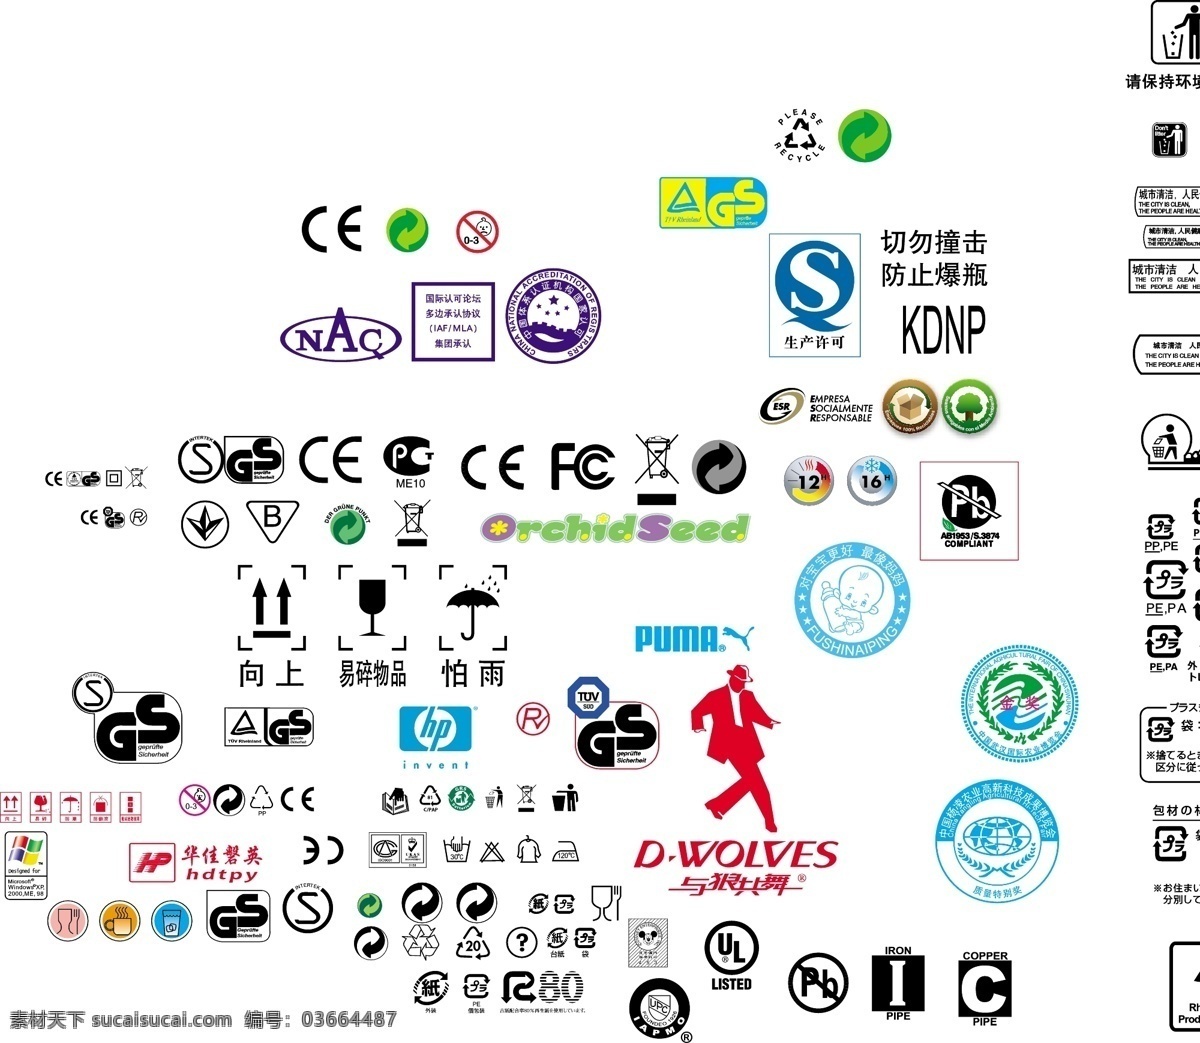 qs标 回收标志 垃圾筒 ce标志 环保标 地球标 fc标 gs标 生产许可 标志图标 公共标识标志